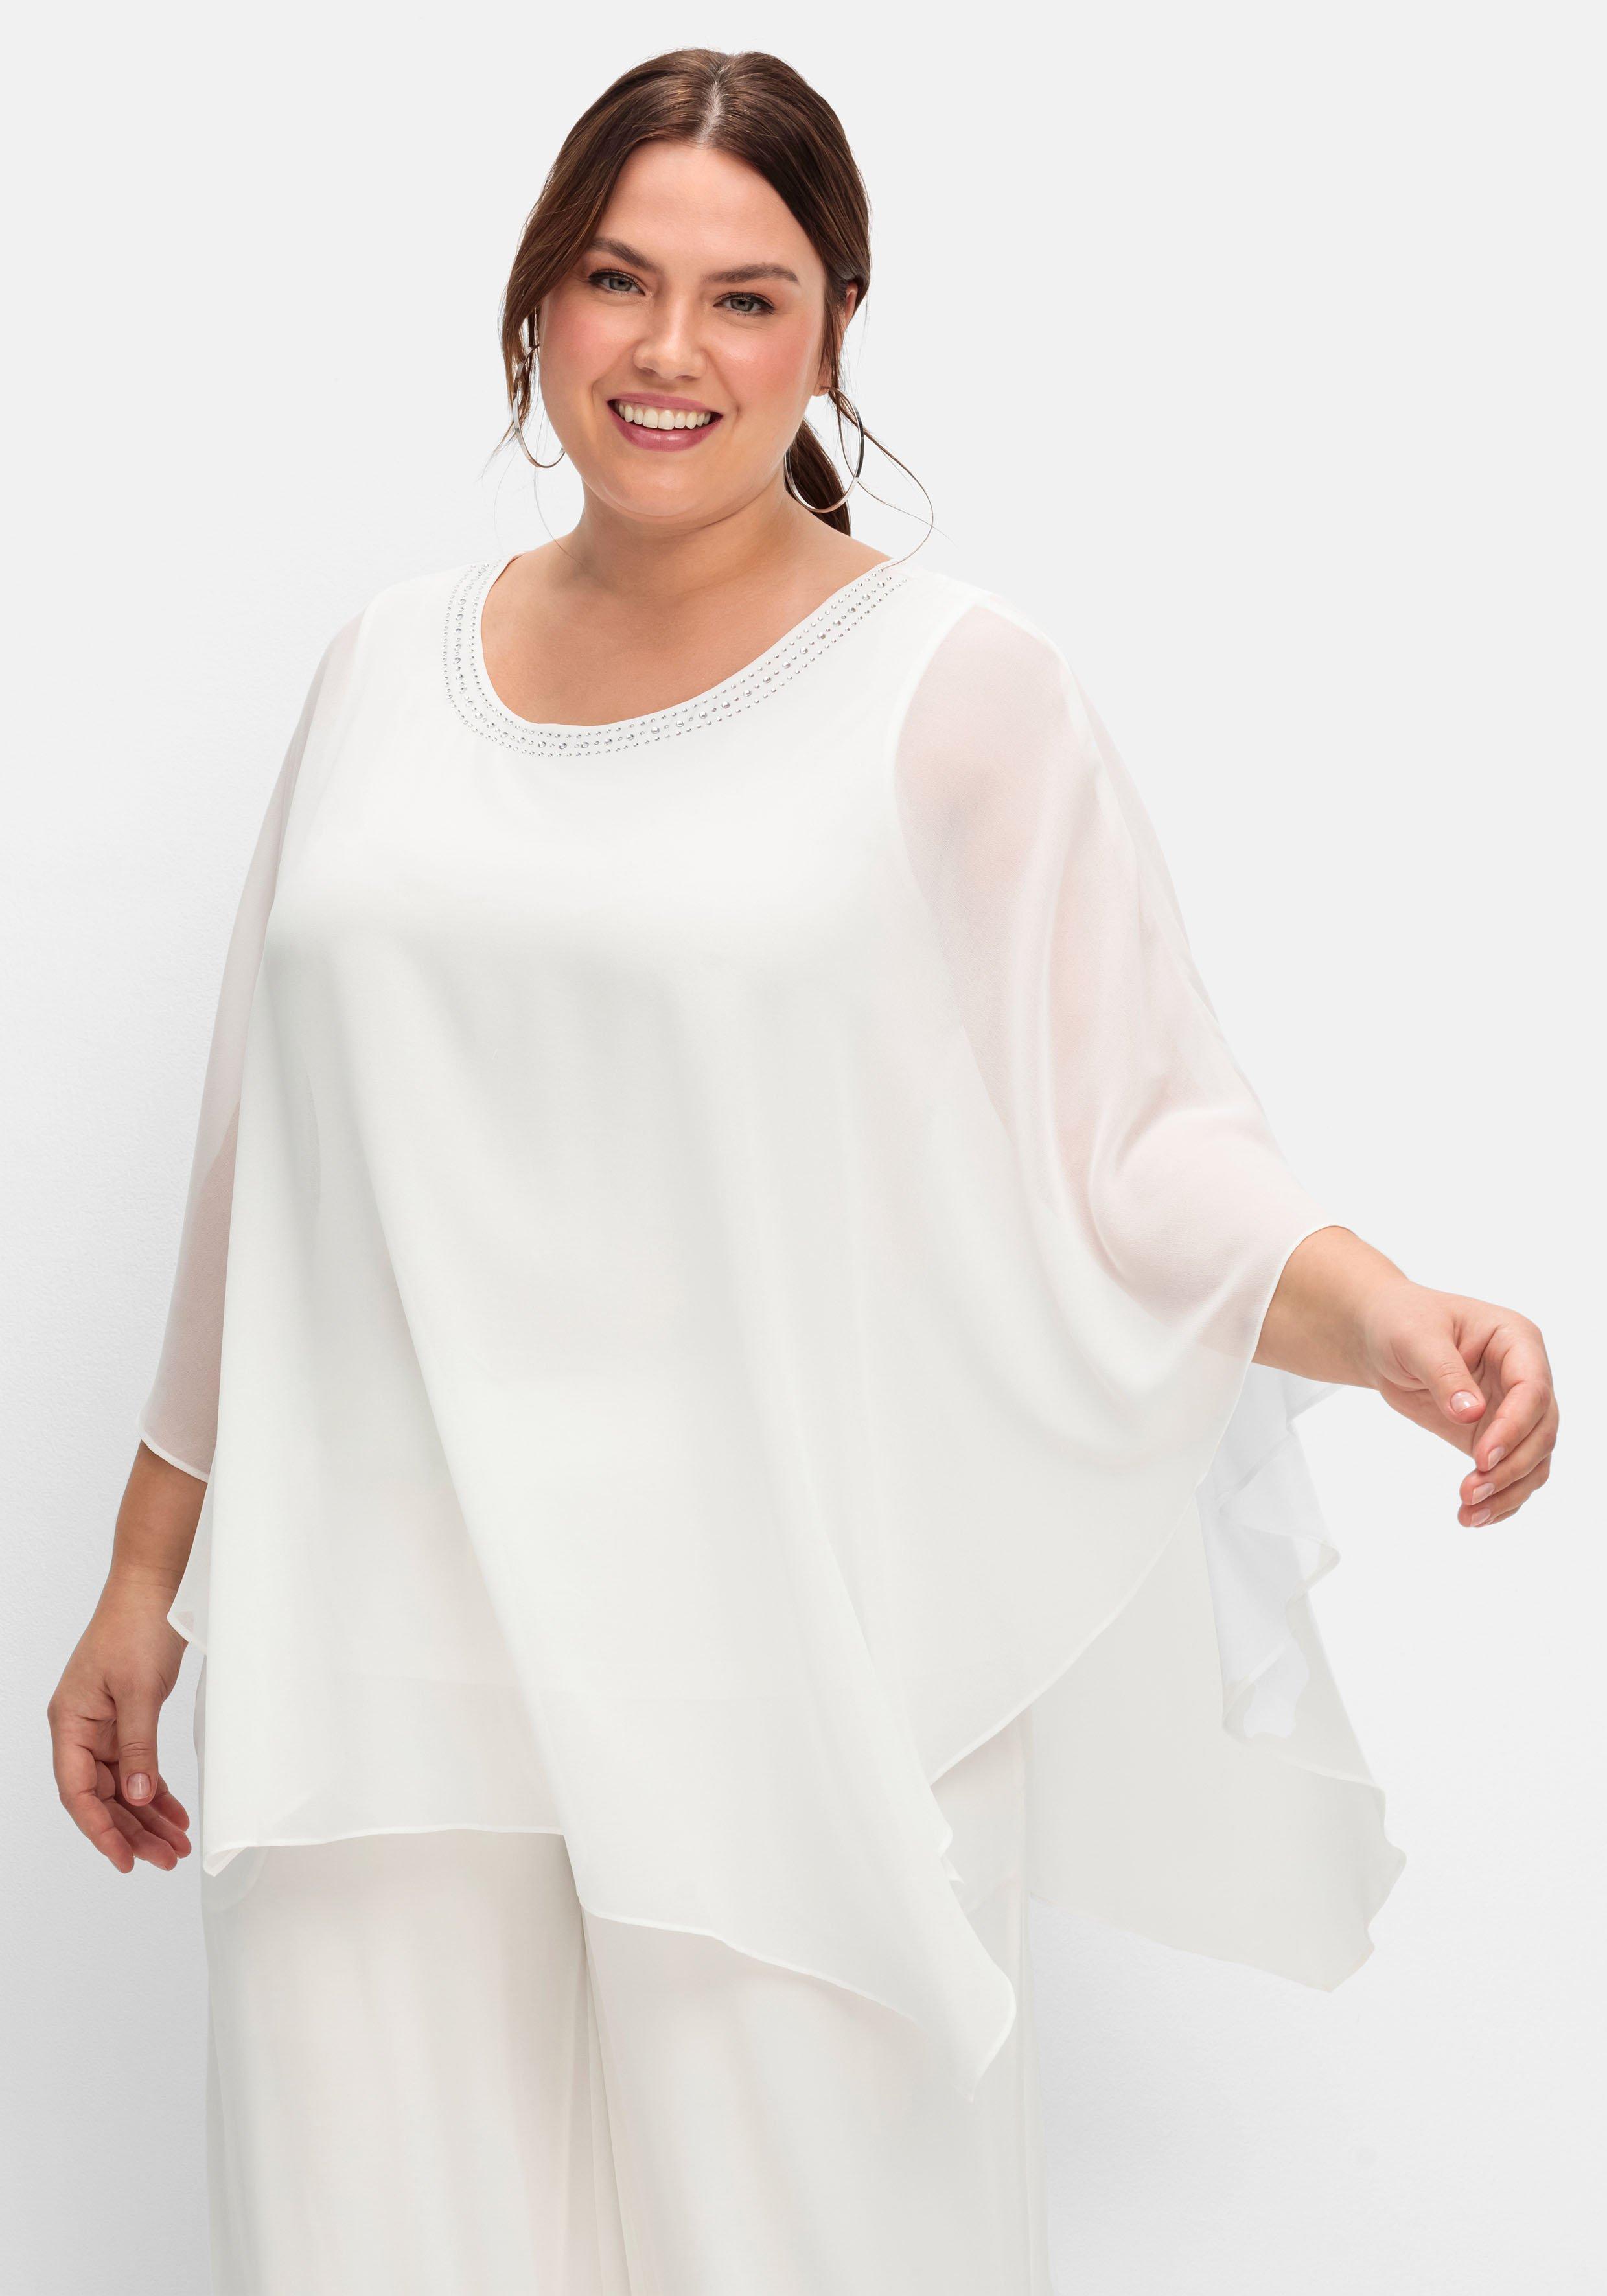 Blusen & Tuniken große Größen weiß | sheego ♥ Plus Size Mode